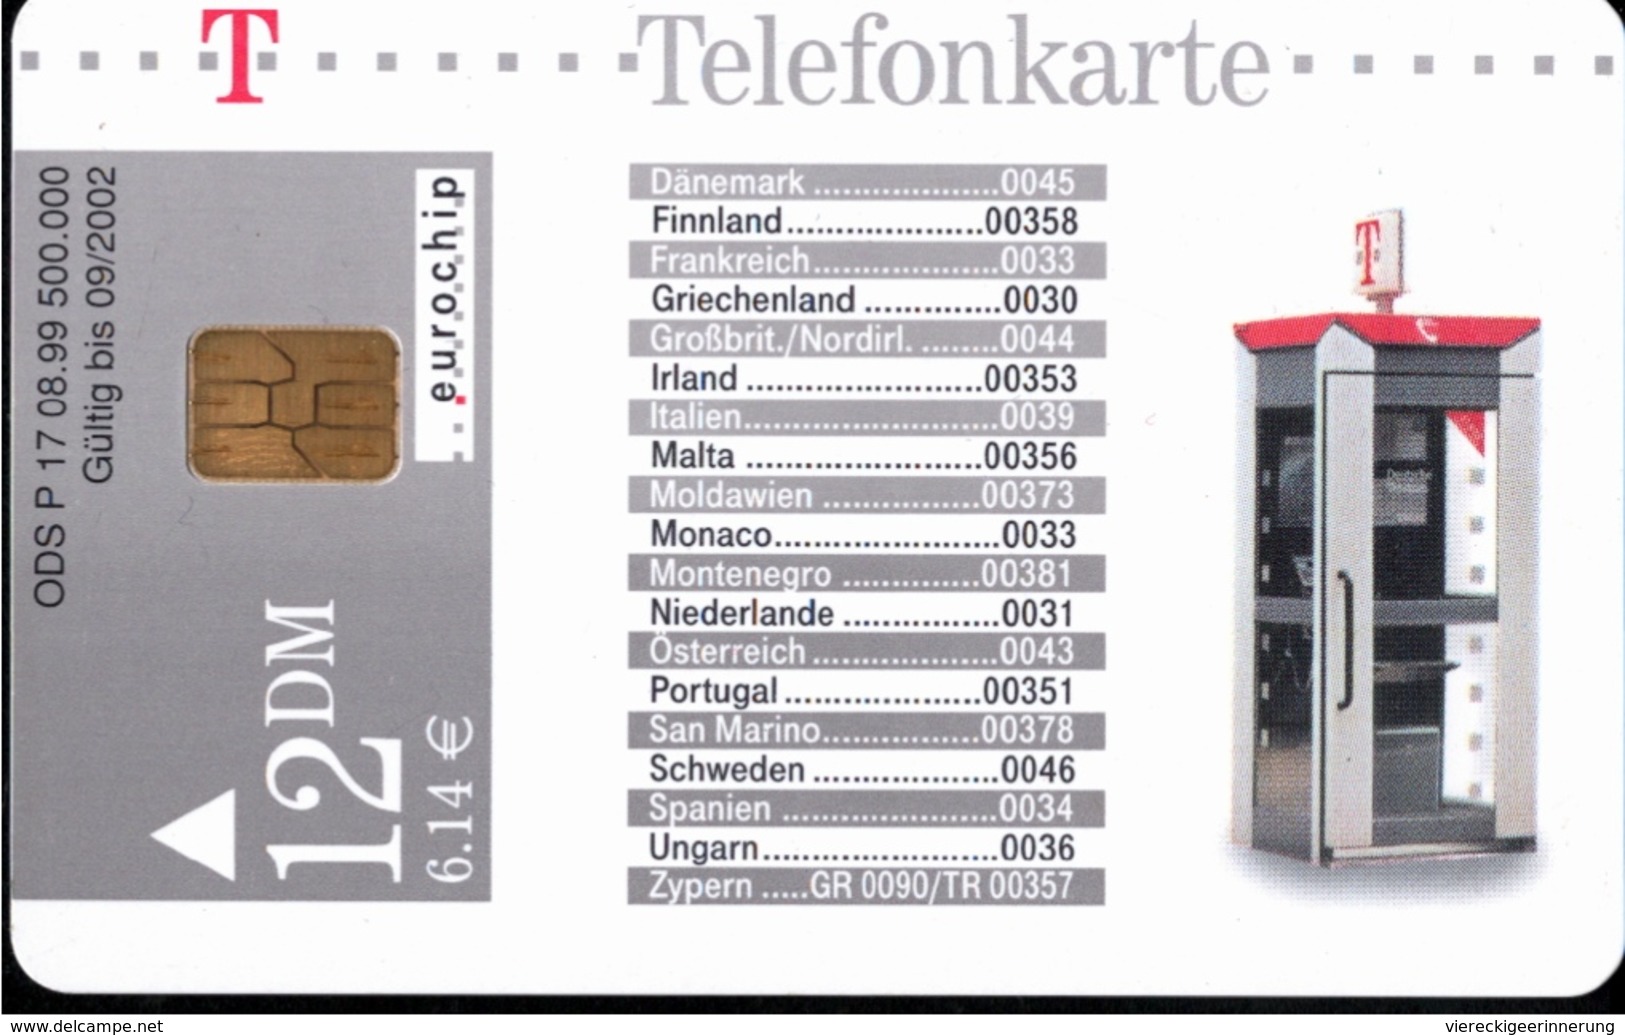 ! Telefonkarte, Telecarte, Phonecard, 1999, P17, Auflage 500000, Telekom Telefonhäuschen, Germany - P & PD-Reeksen : Loket Van D. Telekom